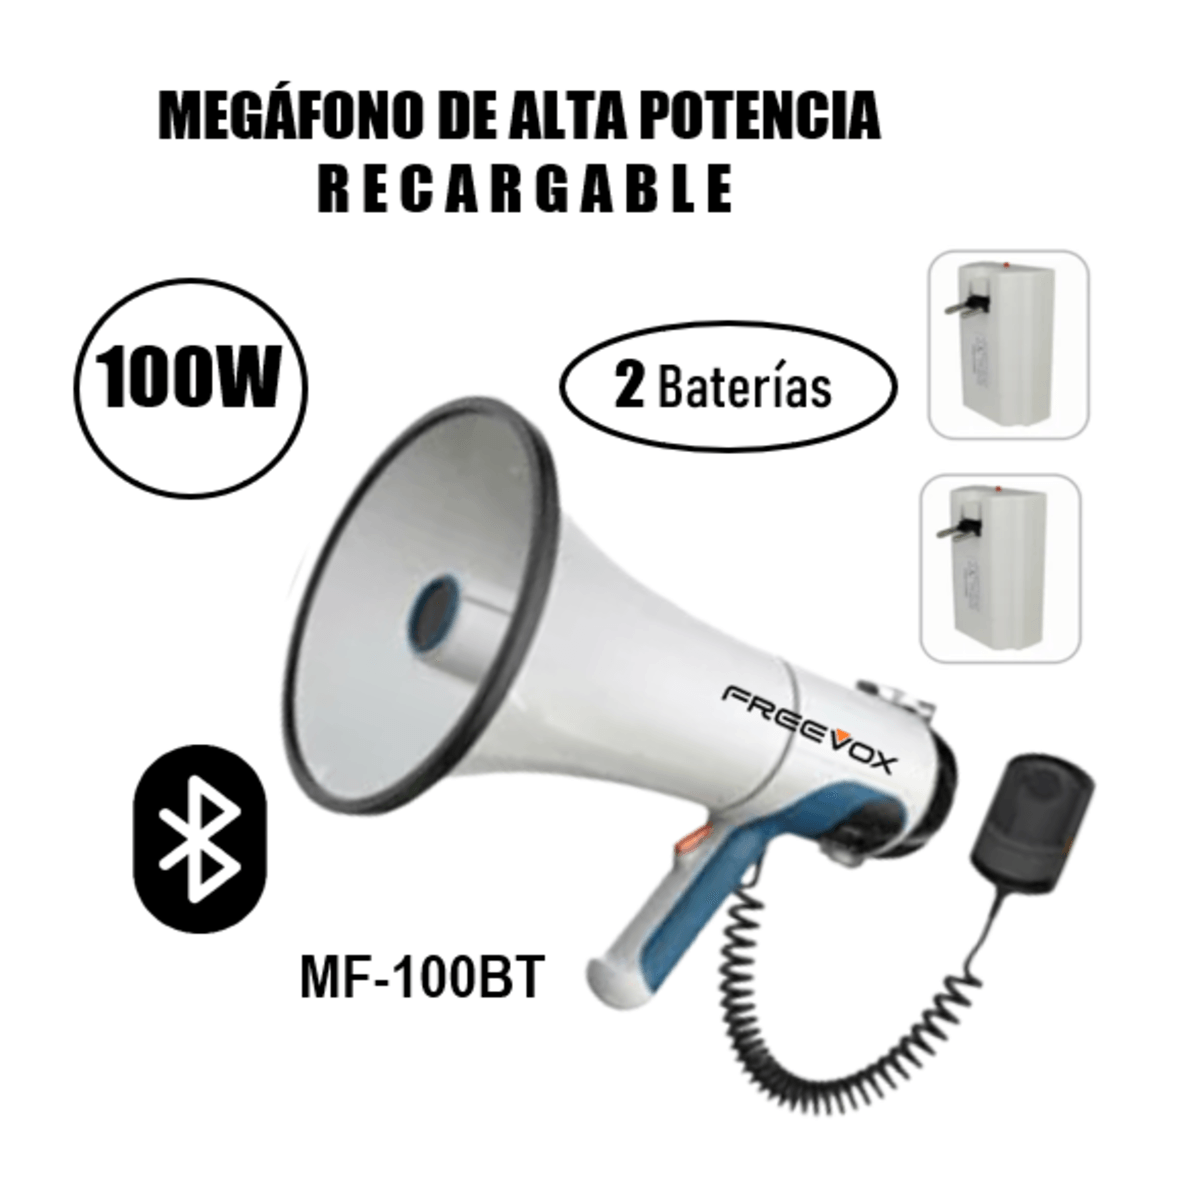 Megáfono Portátil Freevox MF-100BT Batería Recargable 100w